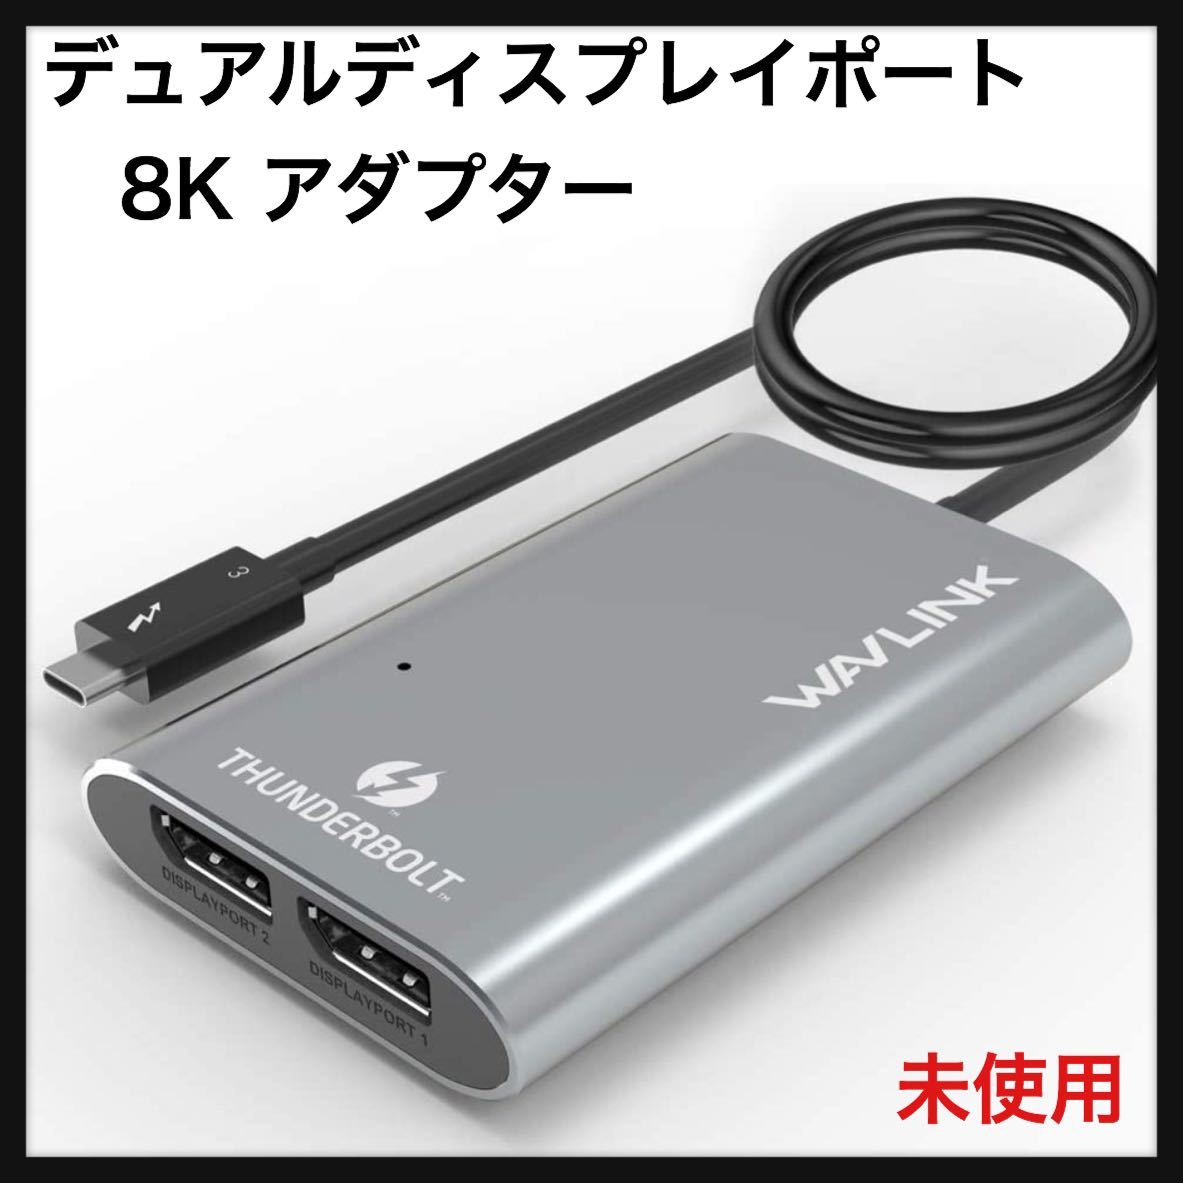 販促品販売中 Plugable USB3.0 ドッキングステーション 横置き Windows および Mac 用 デュアルモニター HDMI DVI  VG